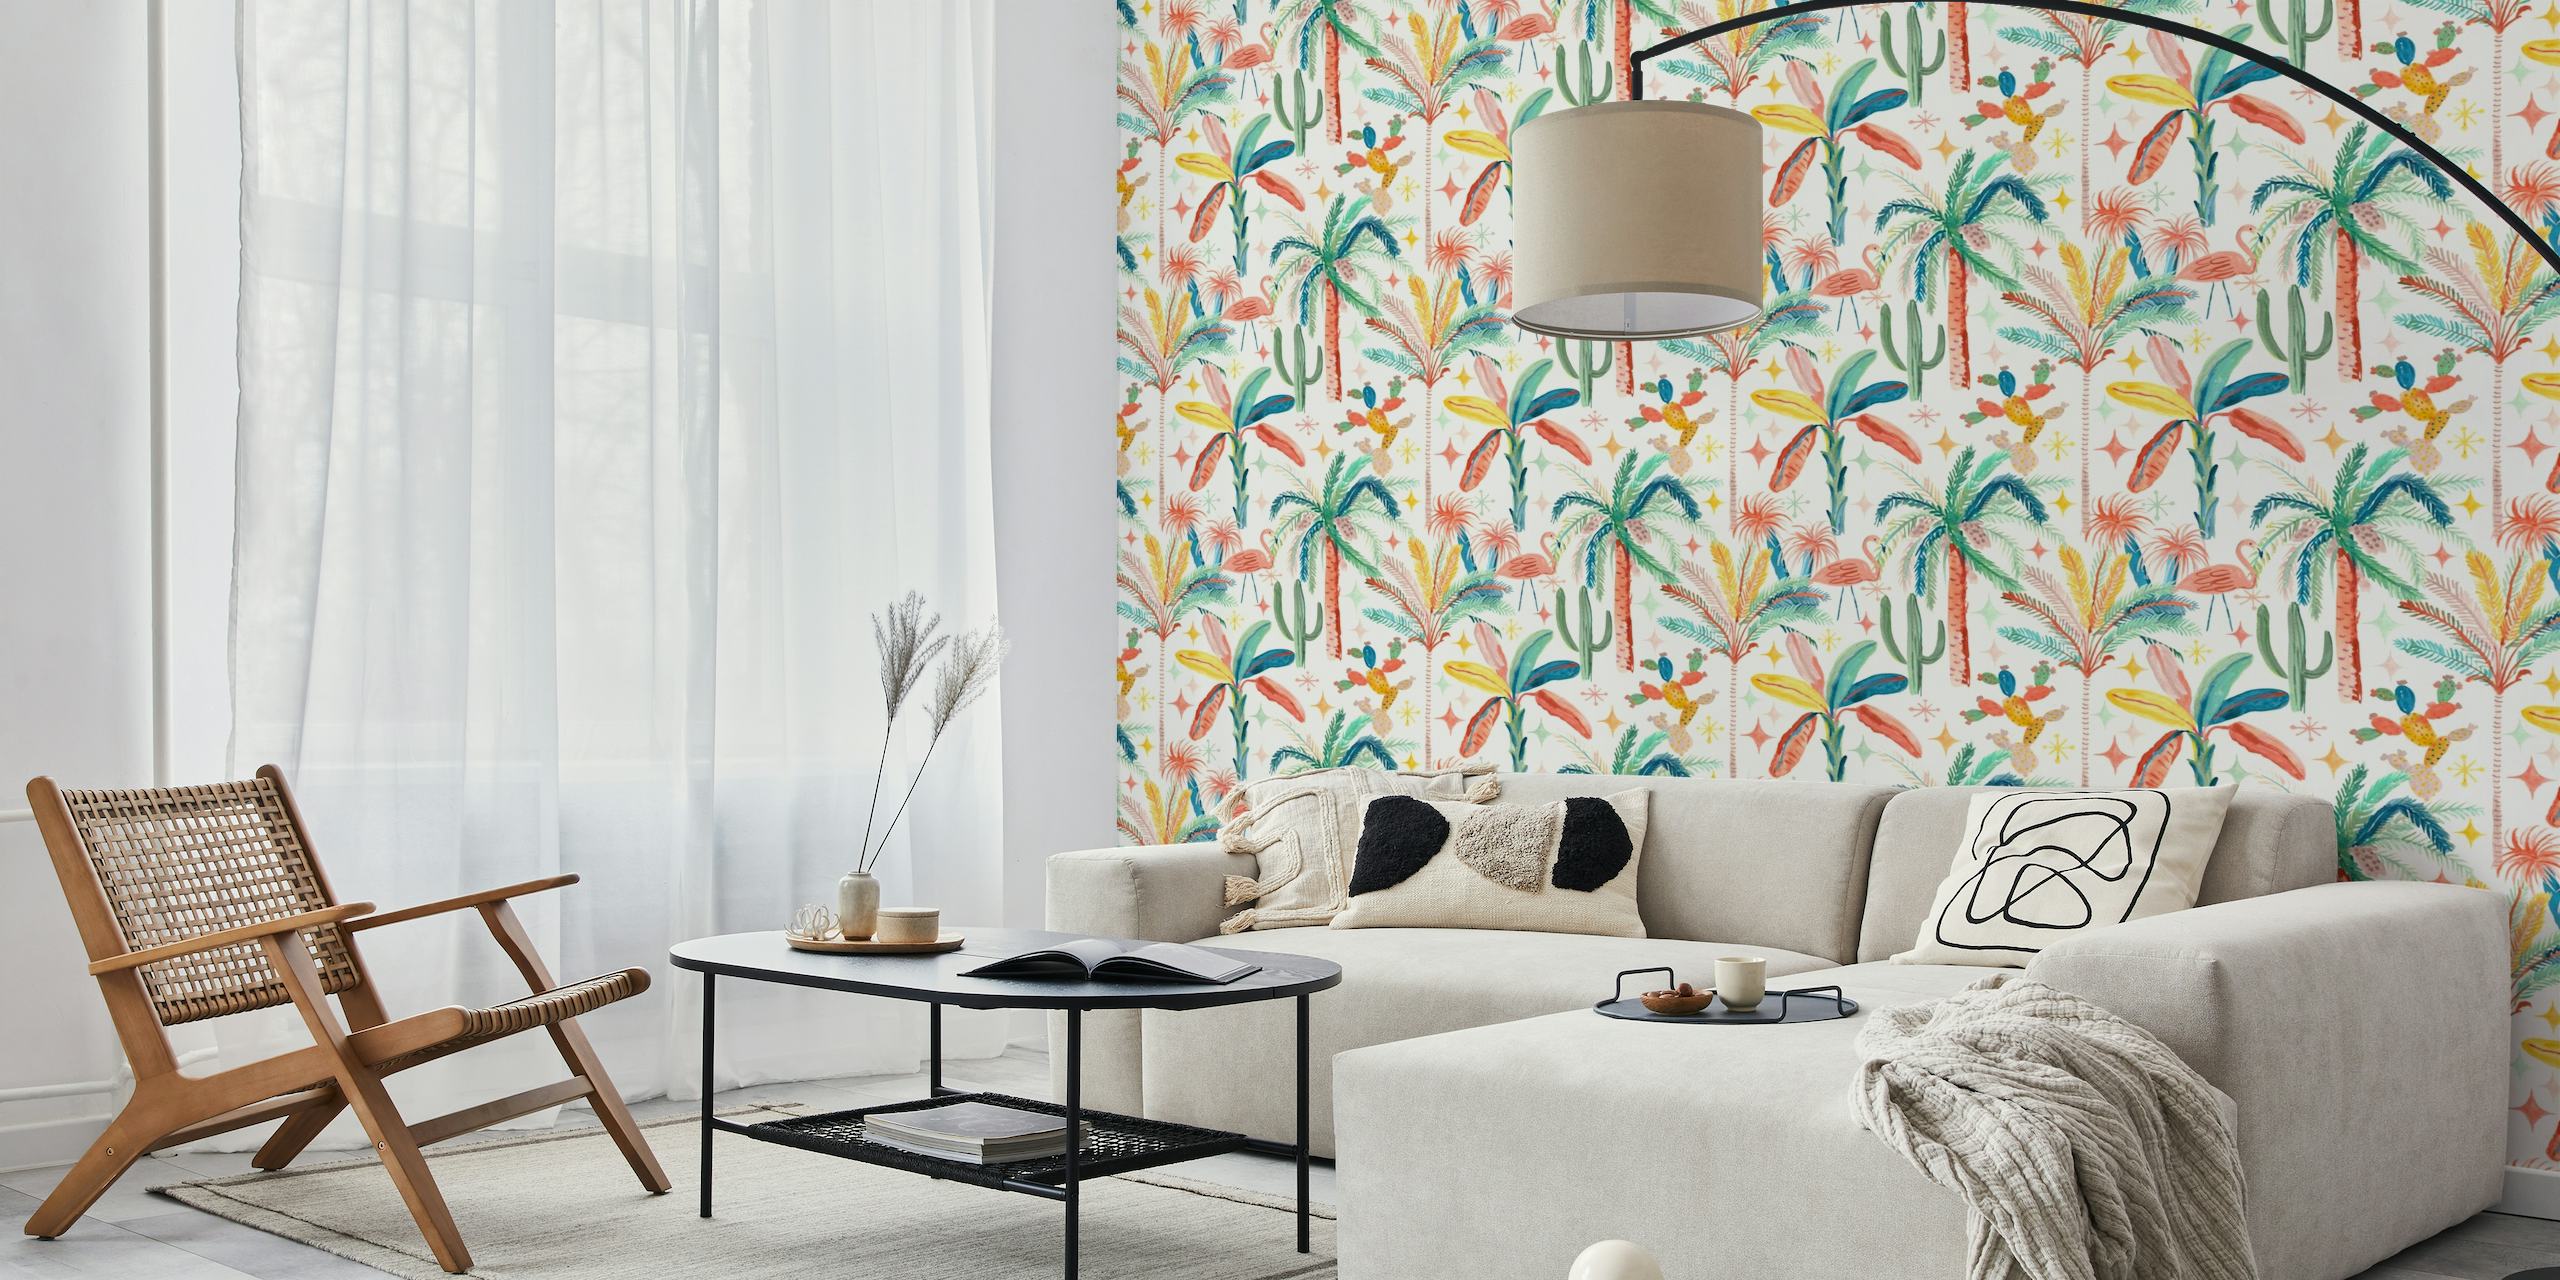 Palmsprings Cream Terracotta-vægmaleri med palmer, kaktusser og tropisk løv